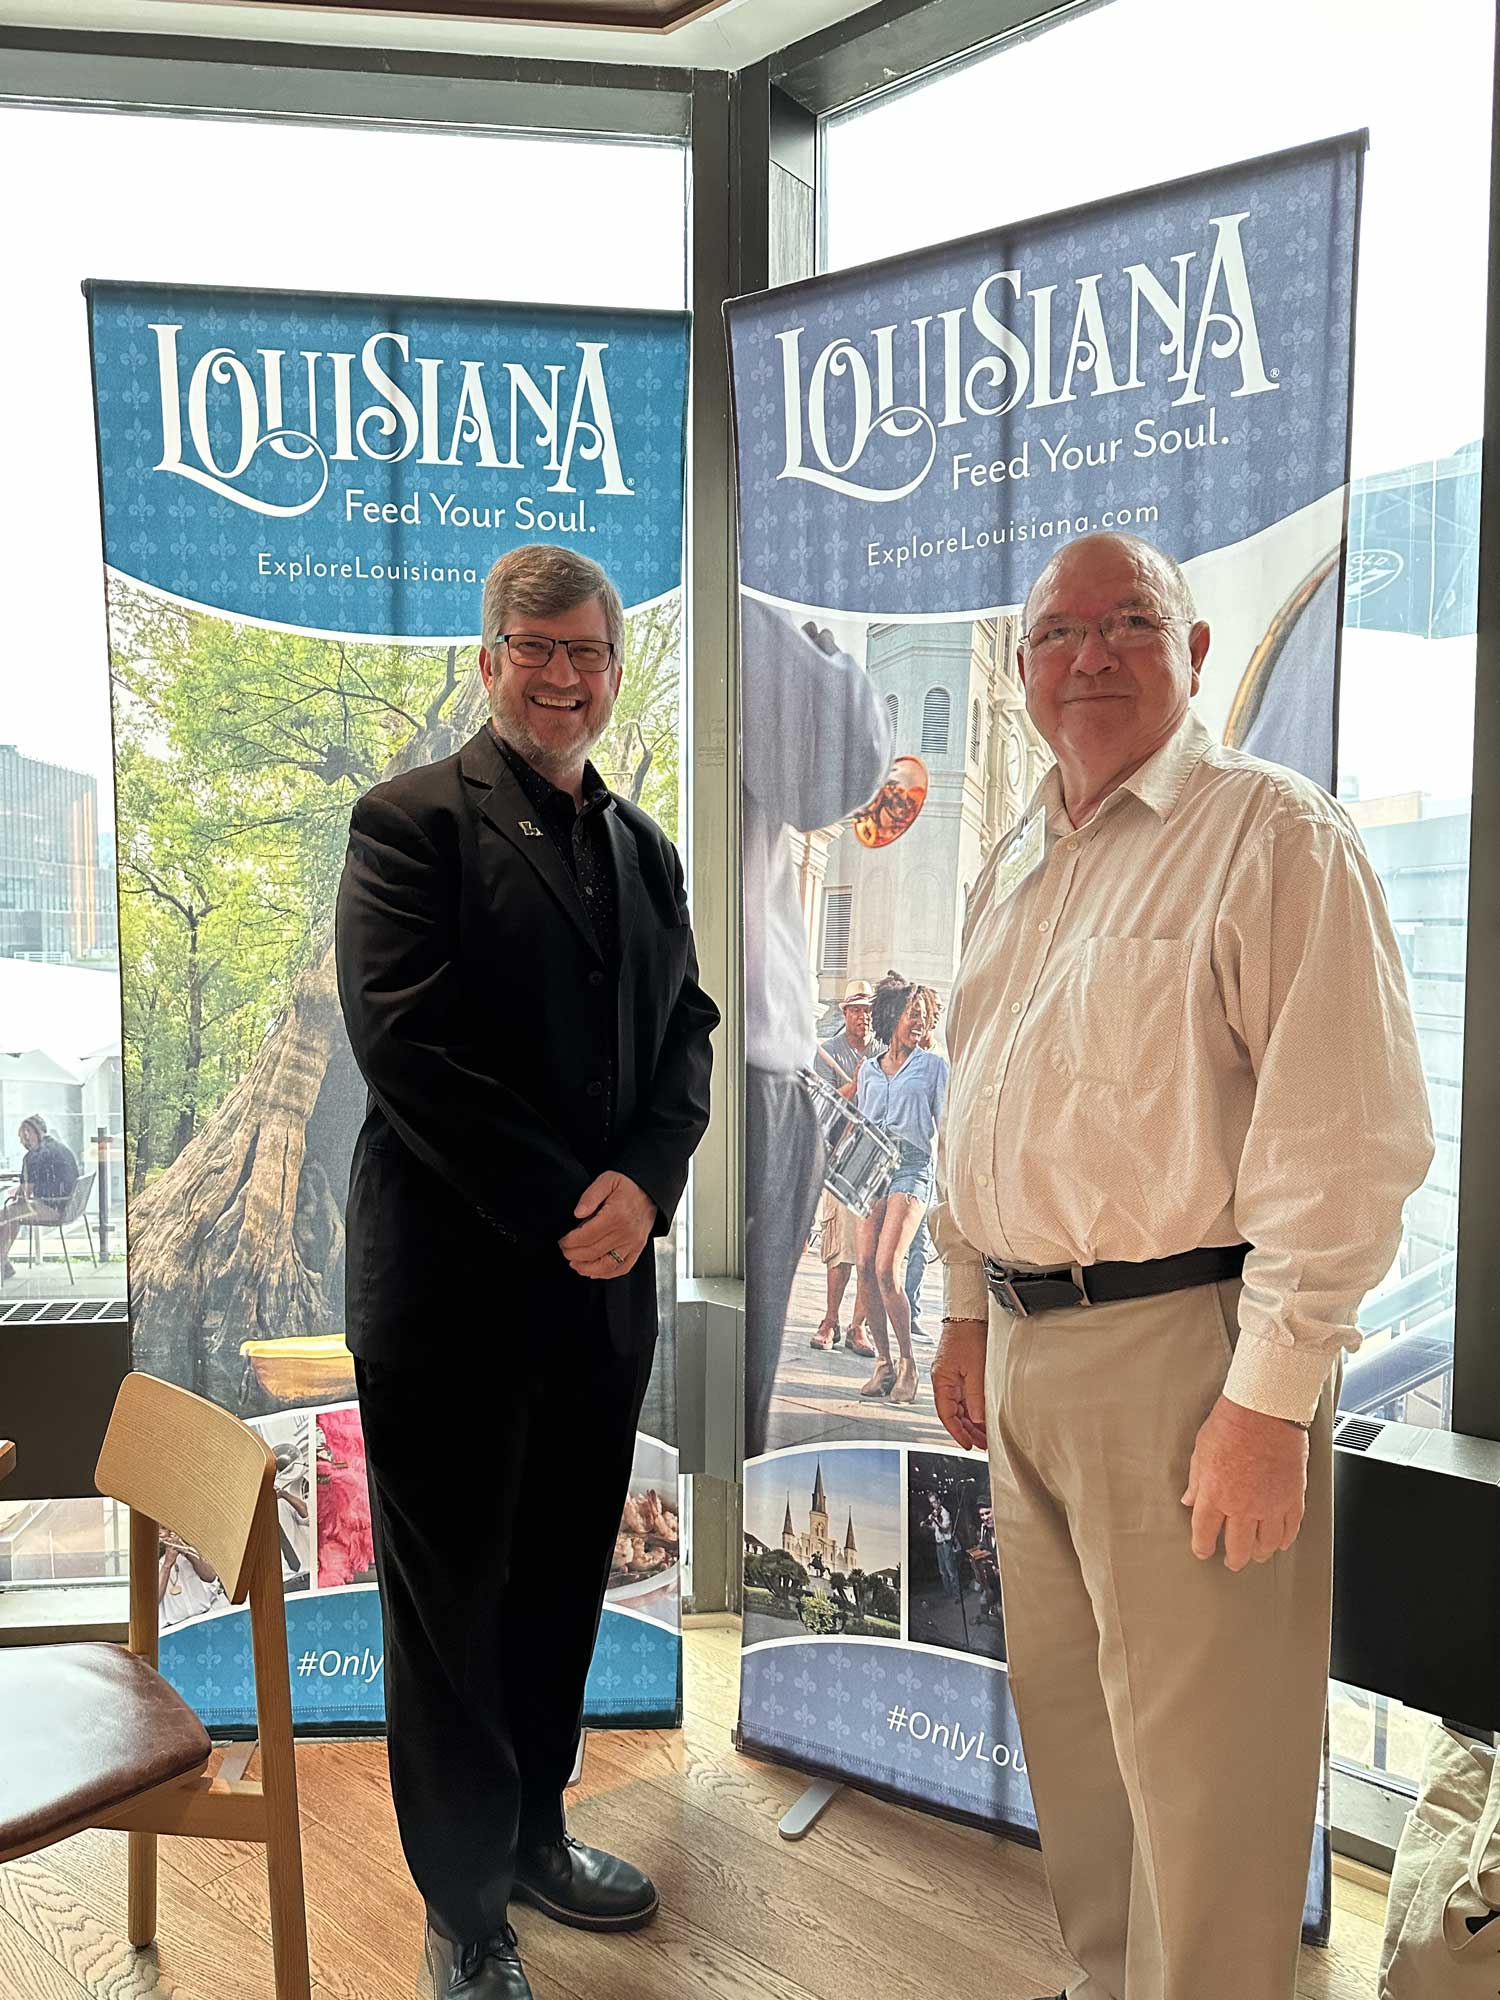 Représentants de l'office de tourisme de la Louisiane, Explore Louisiana